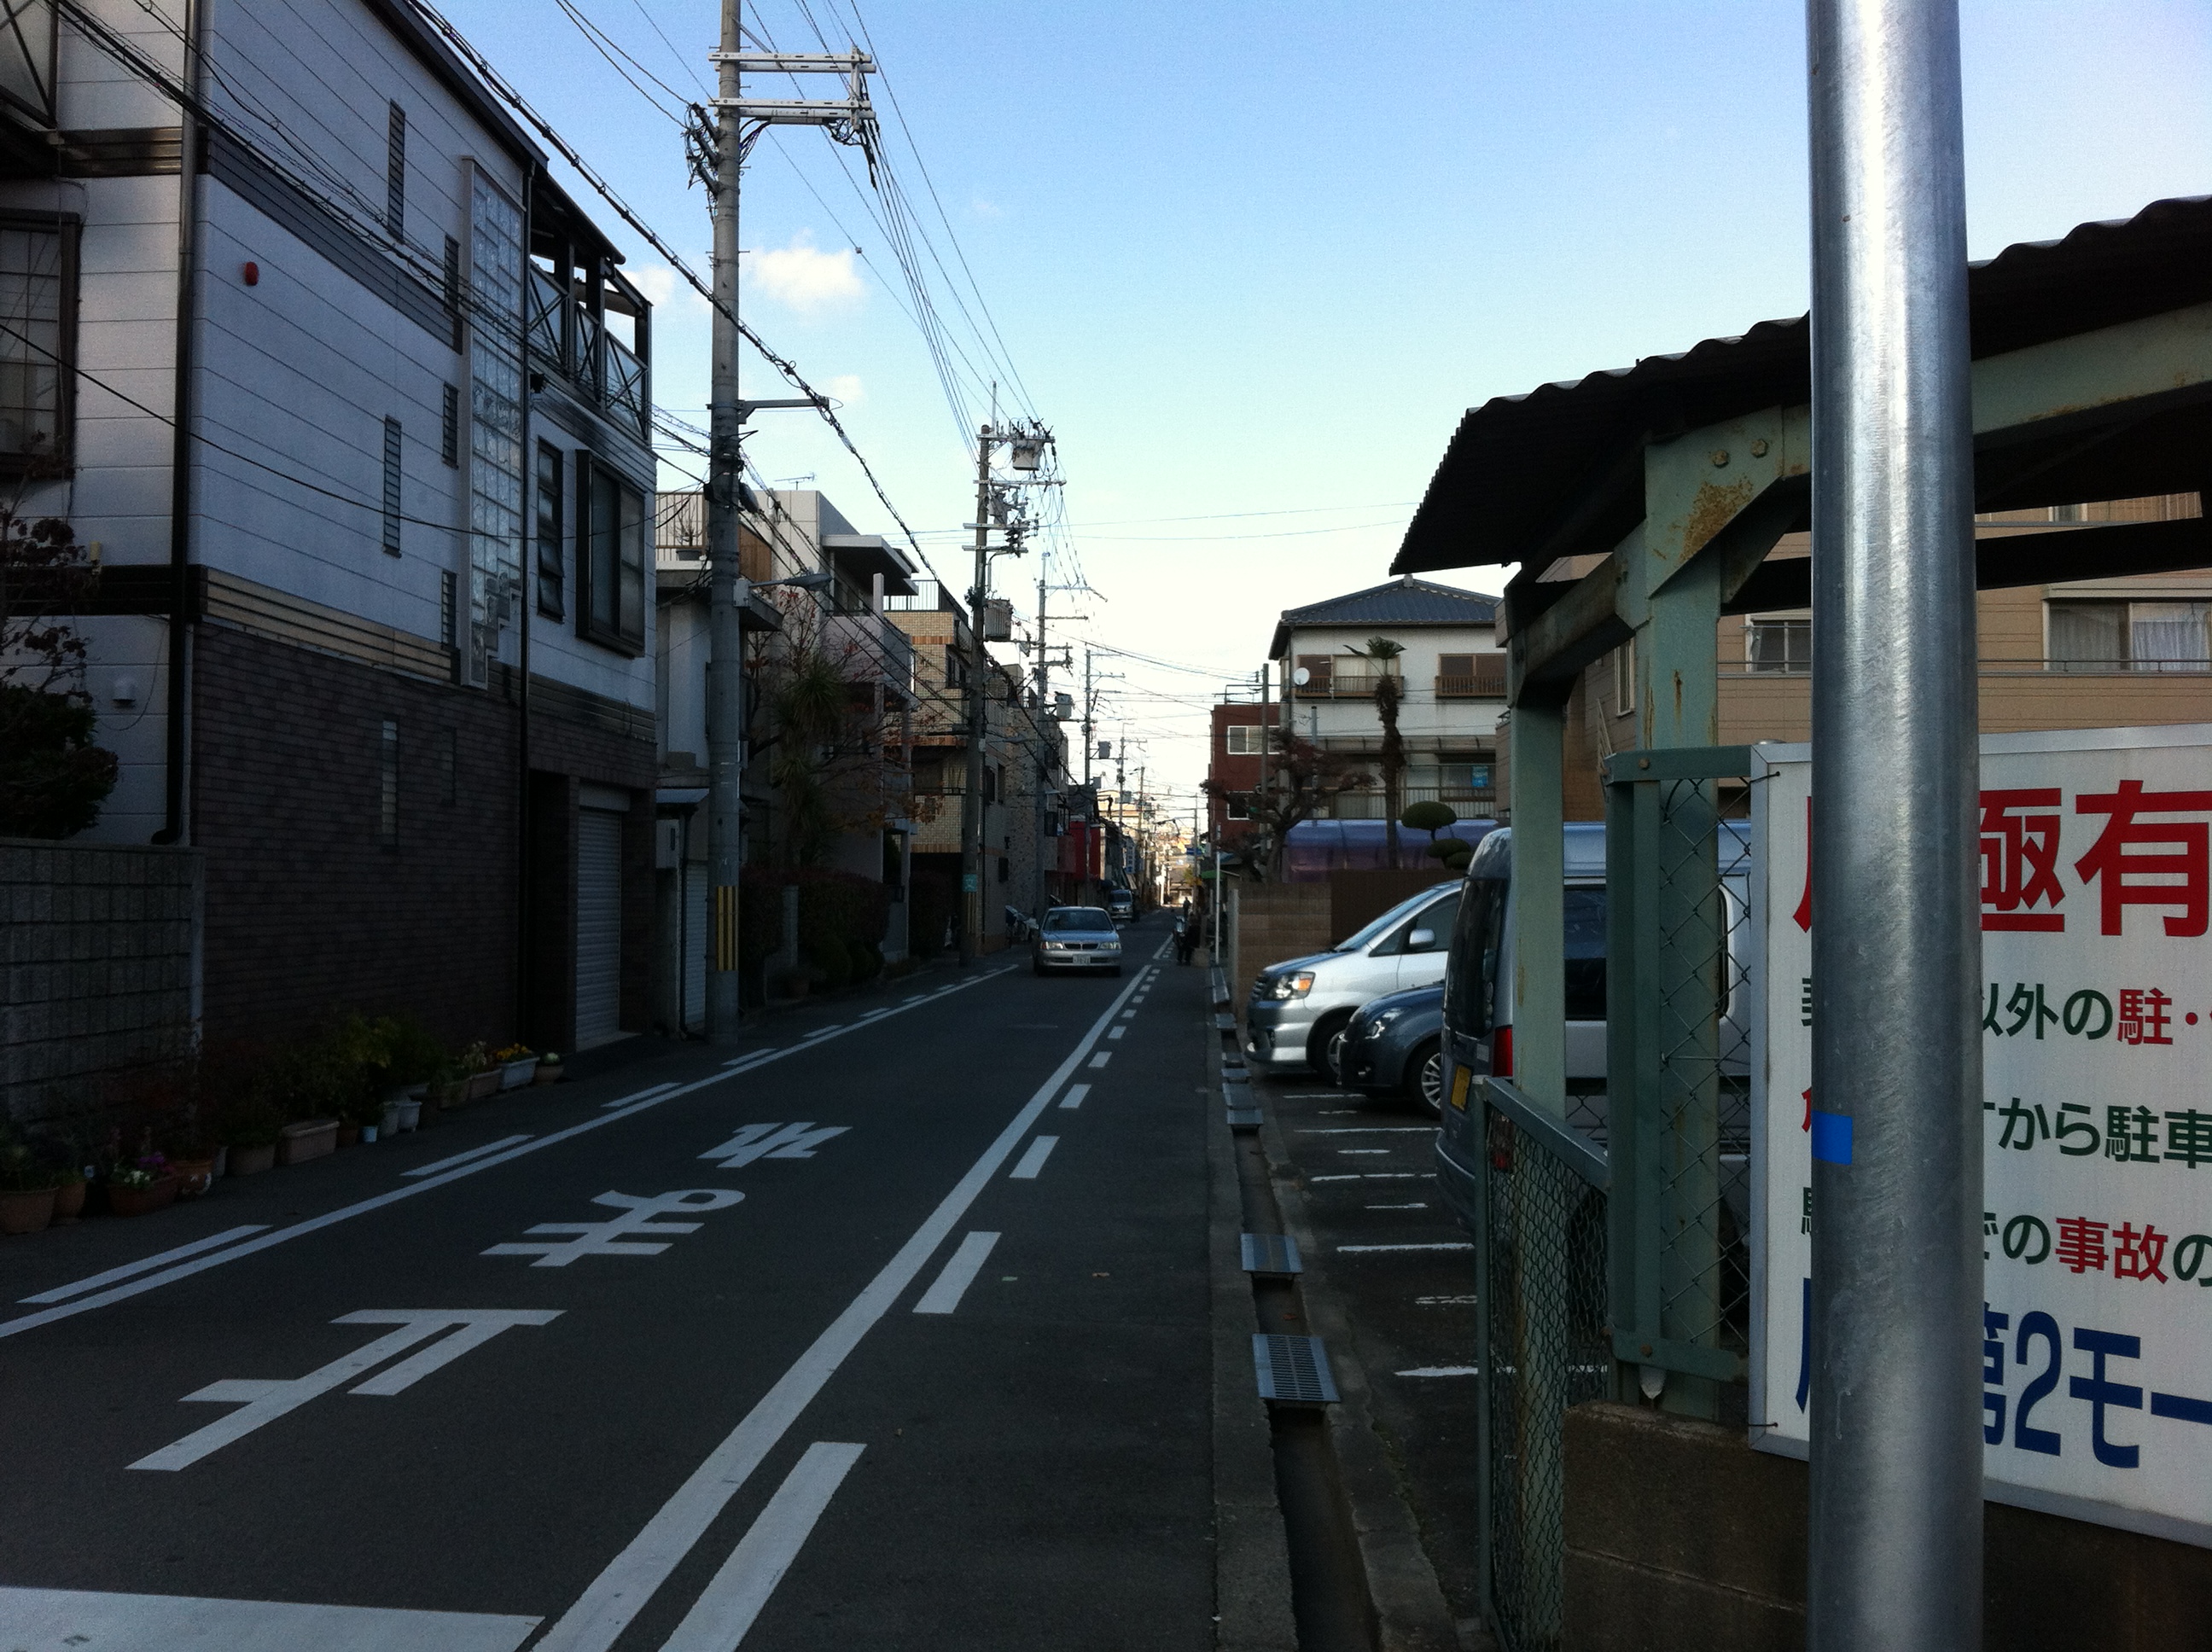 E703AAA6-5357-49DA-8E66-5EAA17F87689.jpeg : 흔한 오사카 거리 풍경